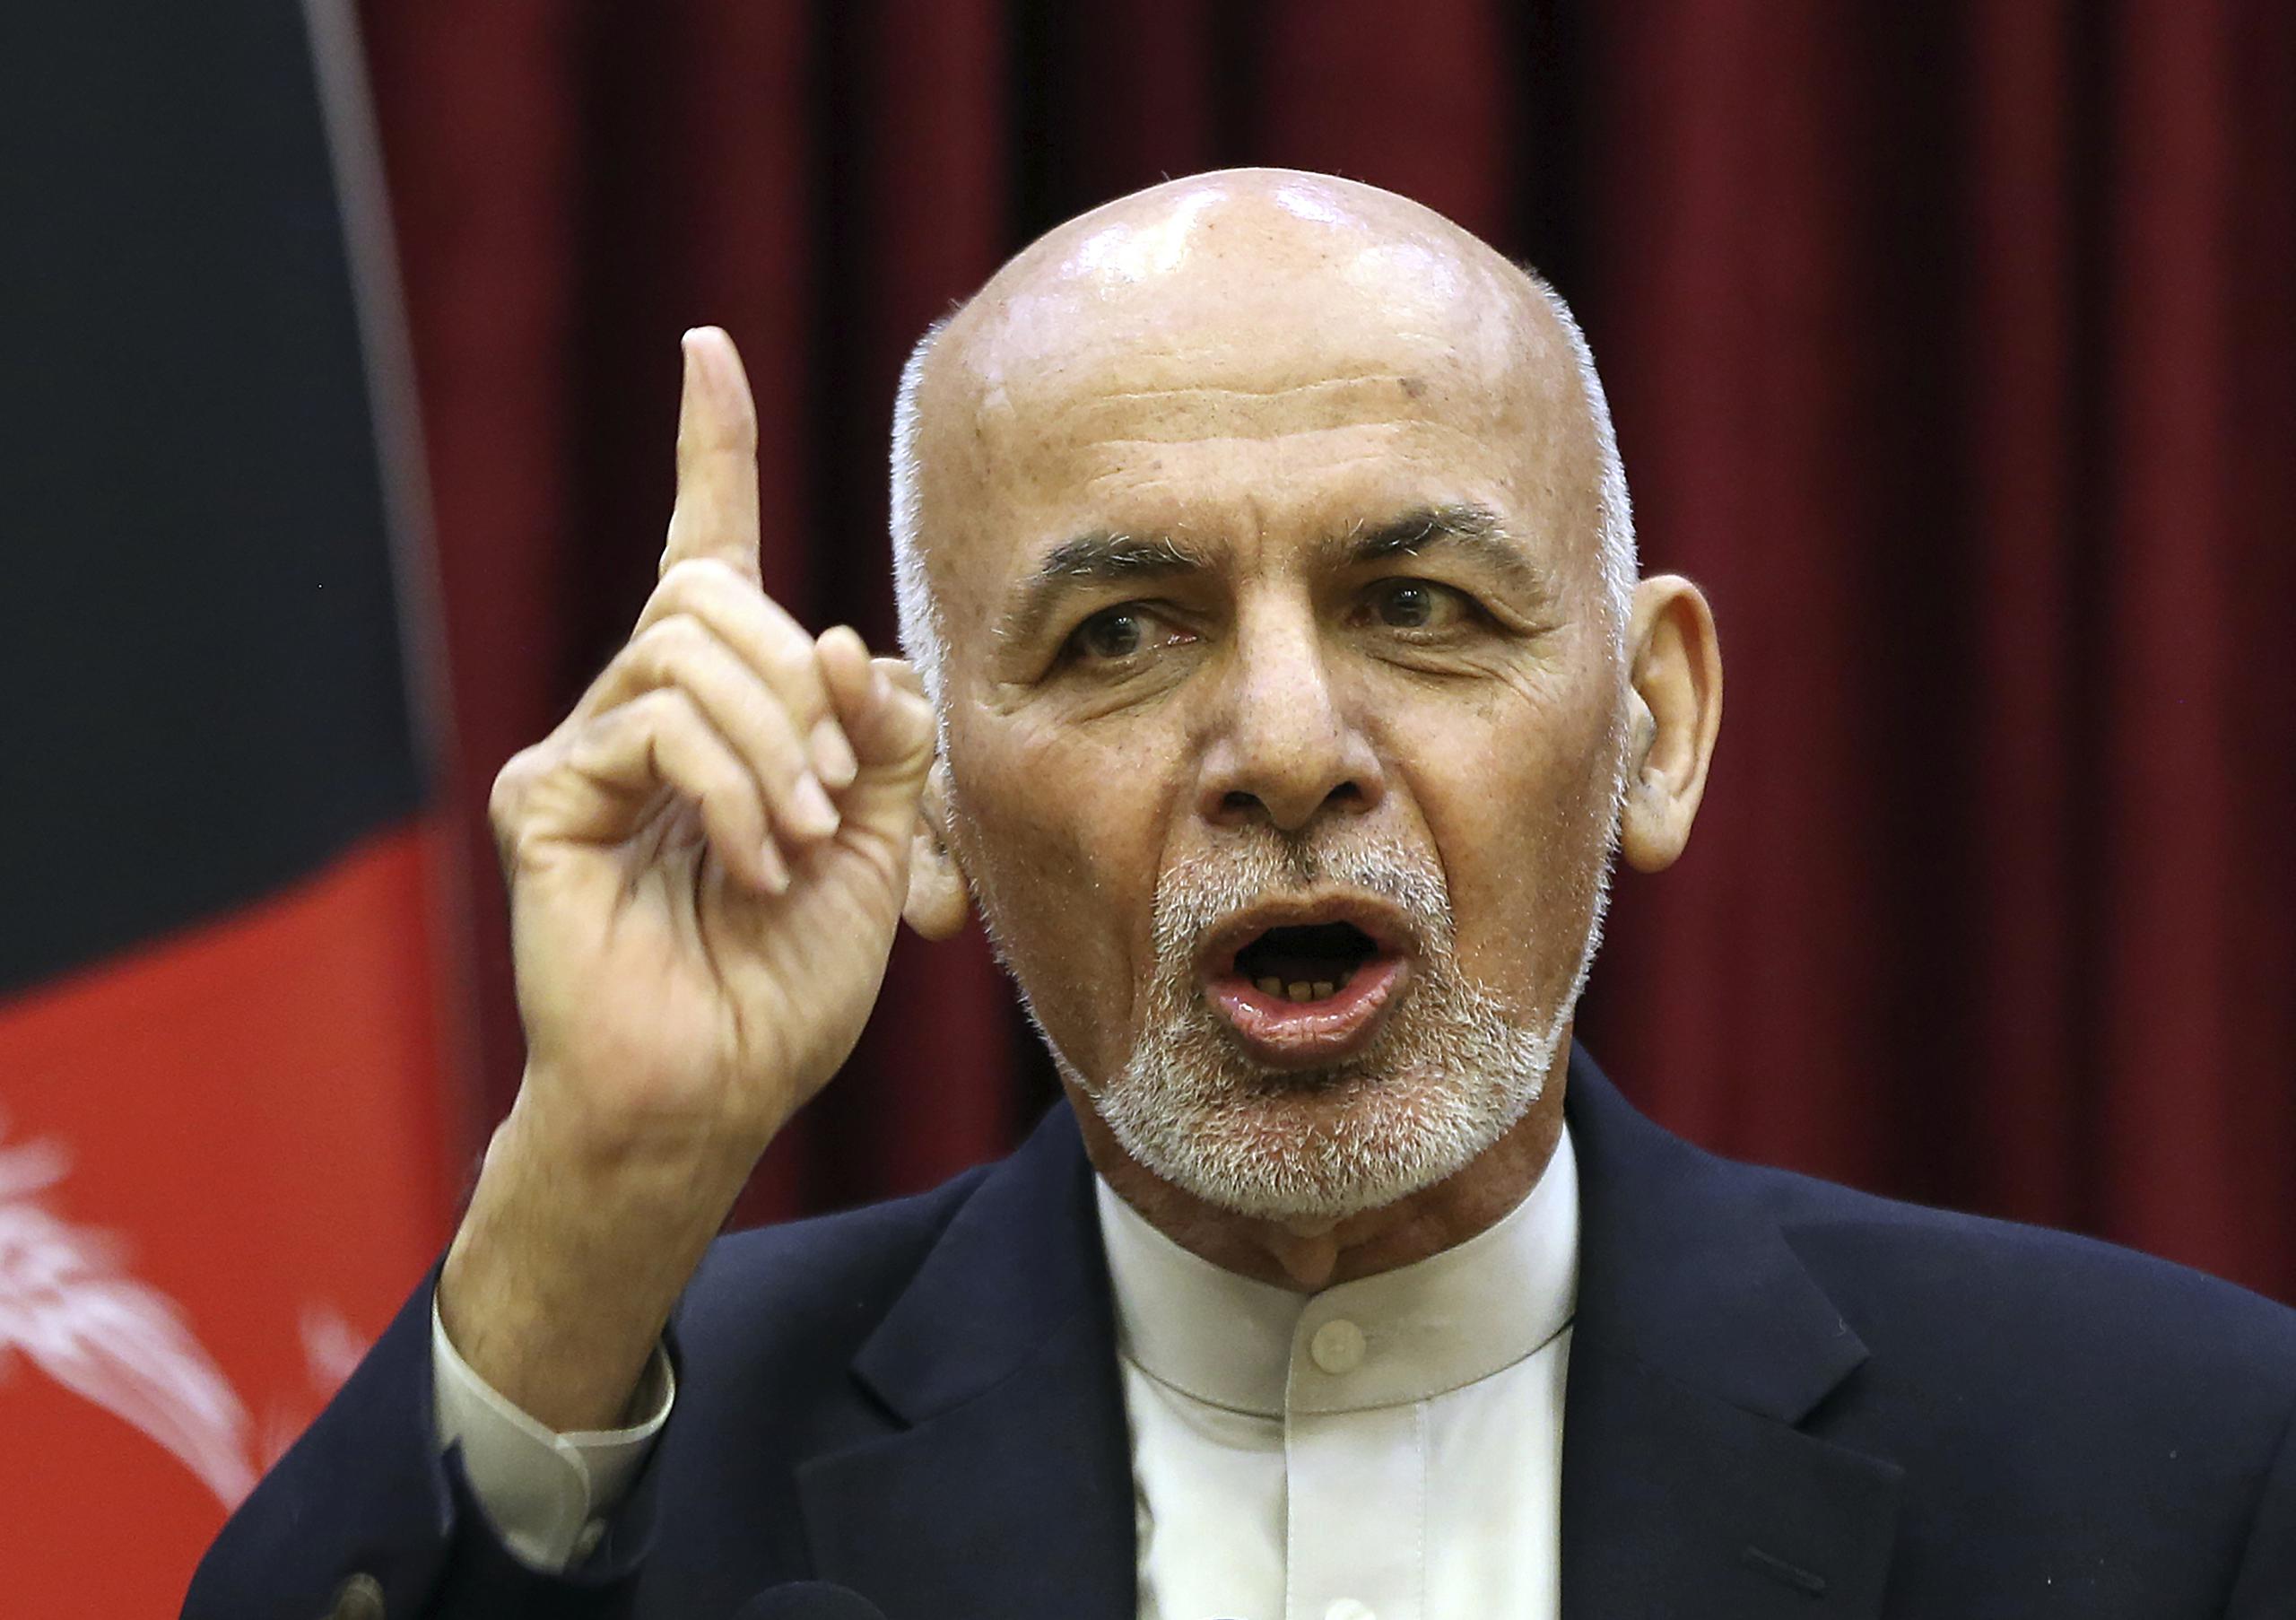 El presidente afgano Ashraf Ghani advierte que "está muy claro que Estados Unidos está facilitando, pero facilitar no significa decidir".